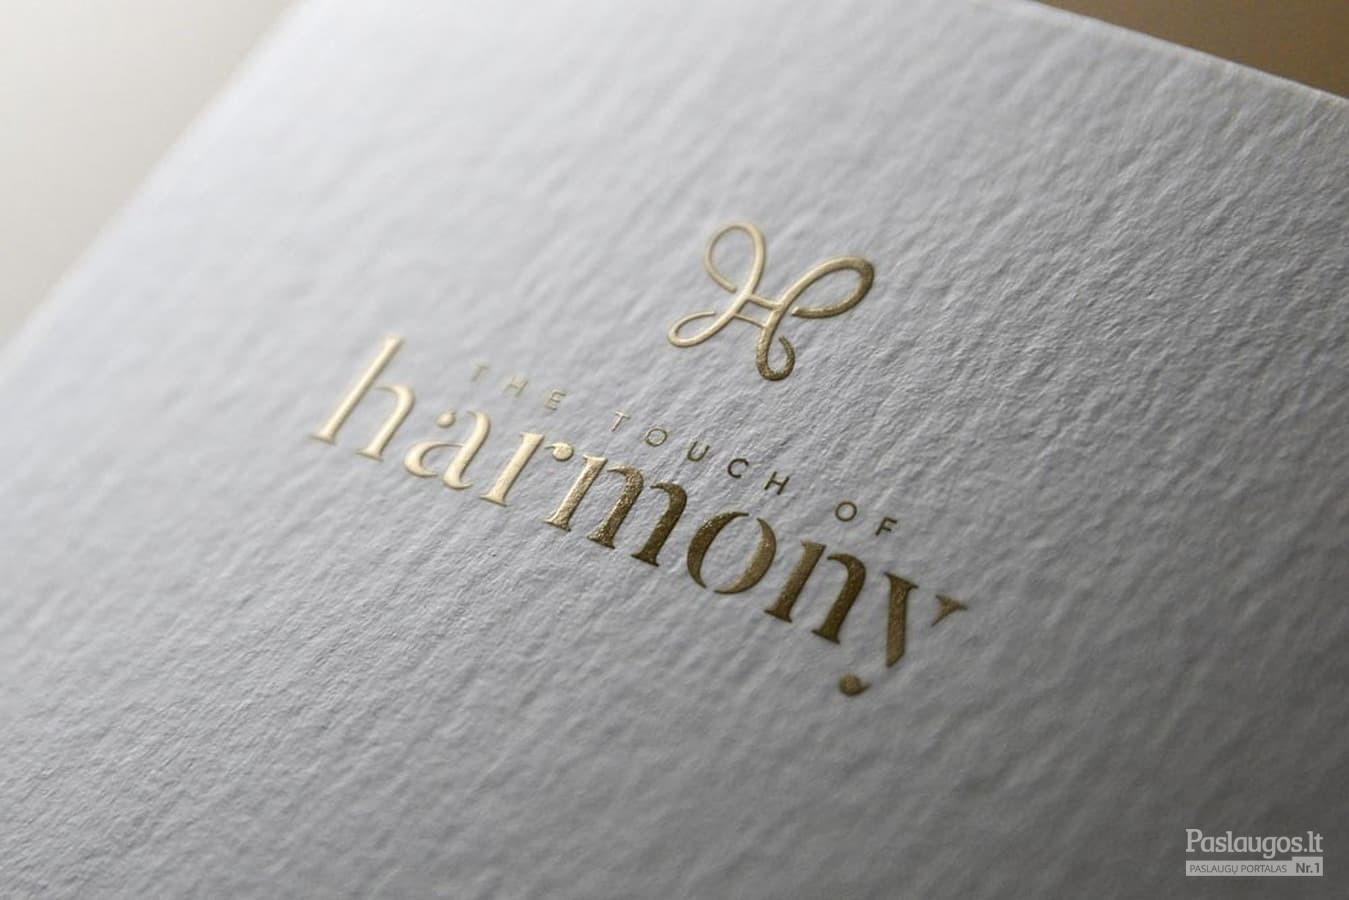 Harmony - Gėlių dėžutės, prekybą internetų / Logotipas / Kostas Vasarevicius - kostazzz@gmail.com